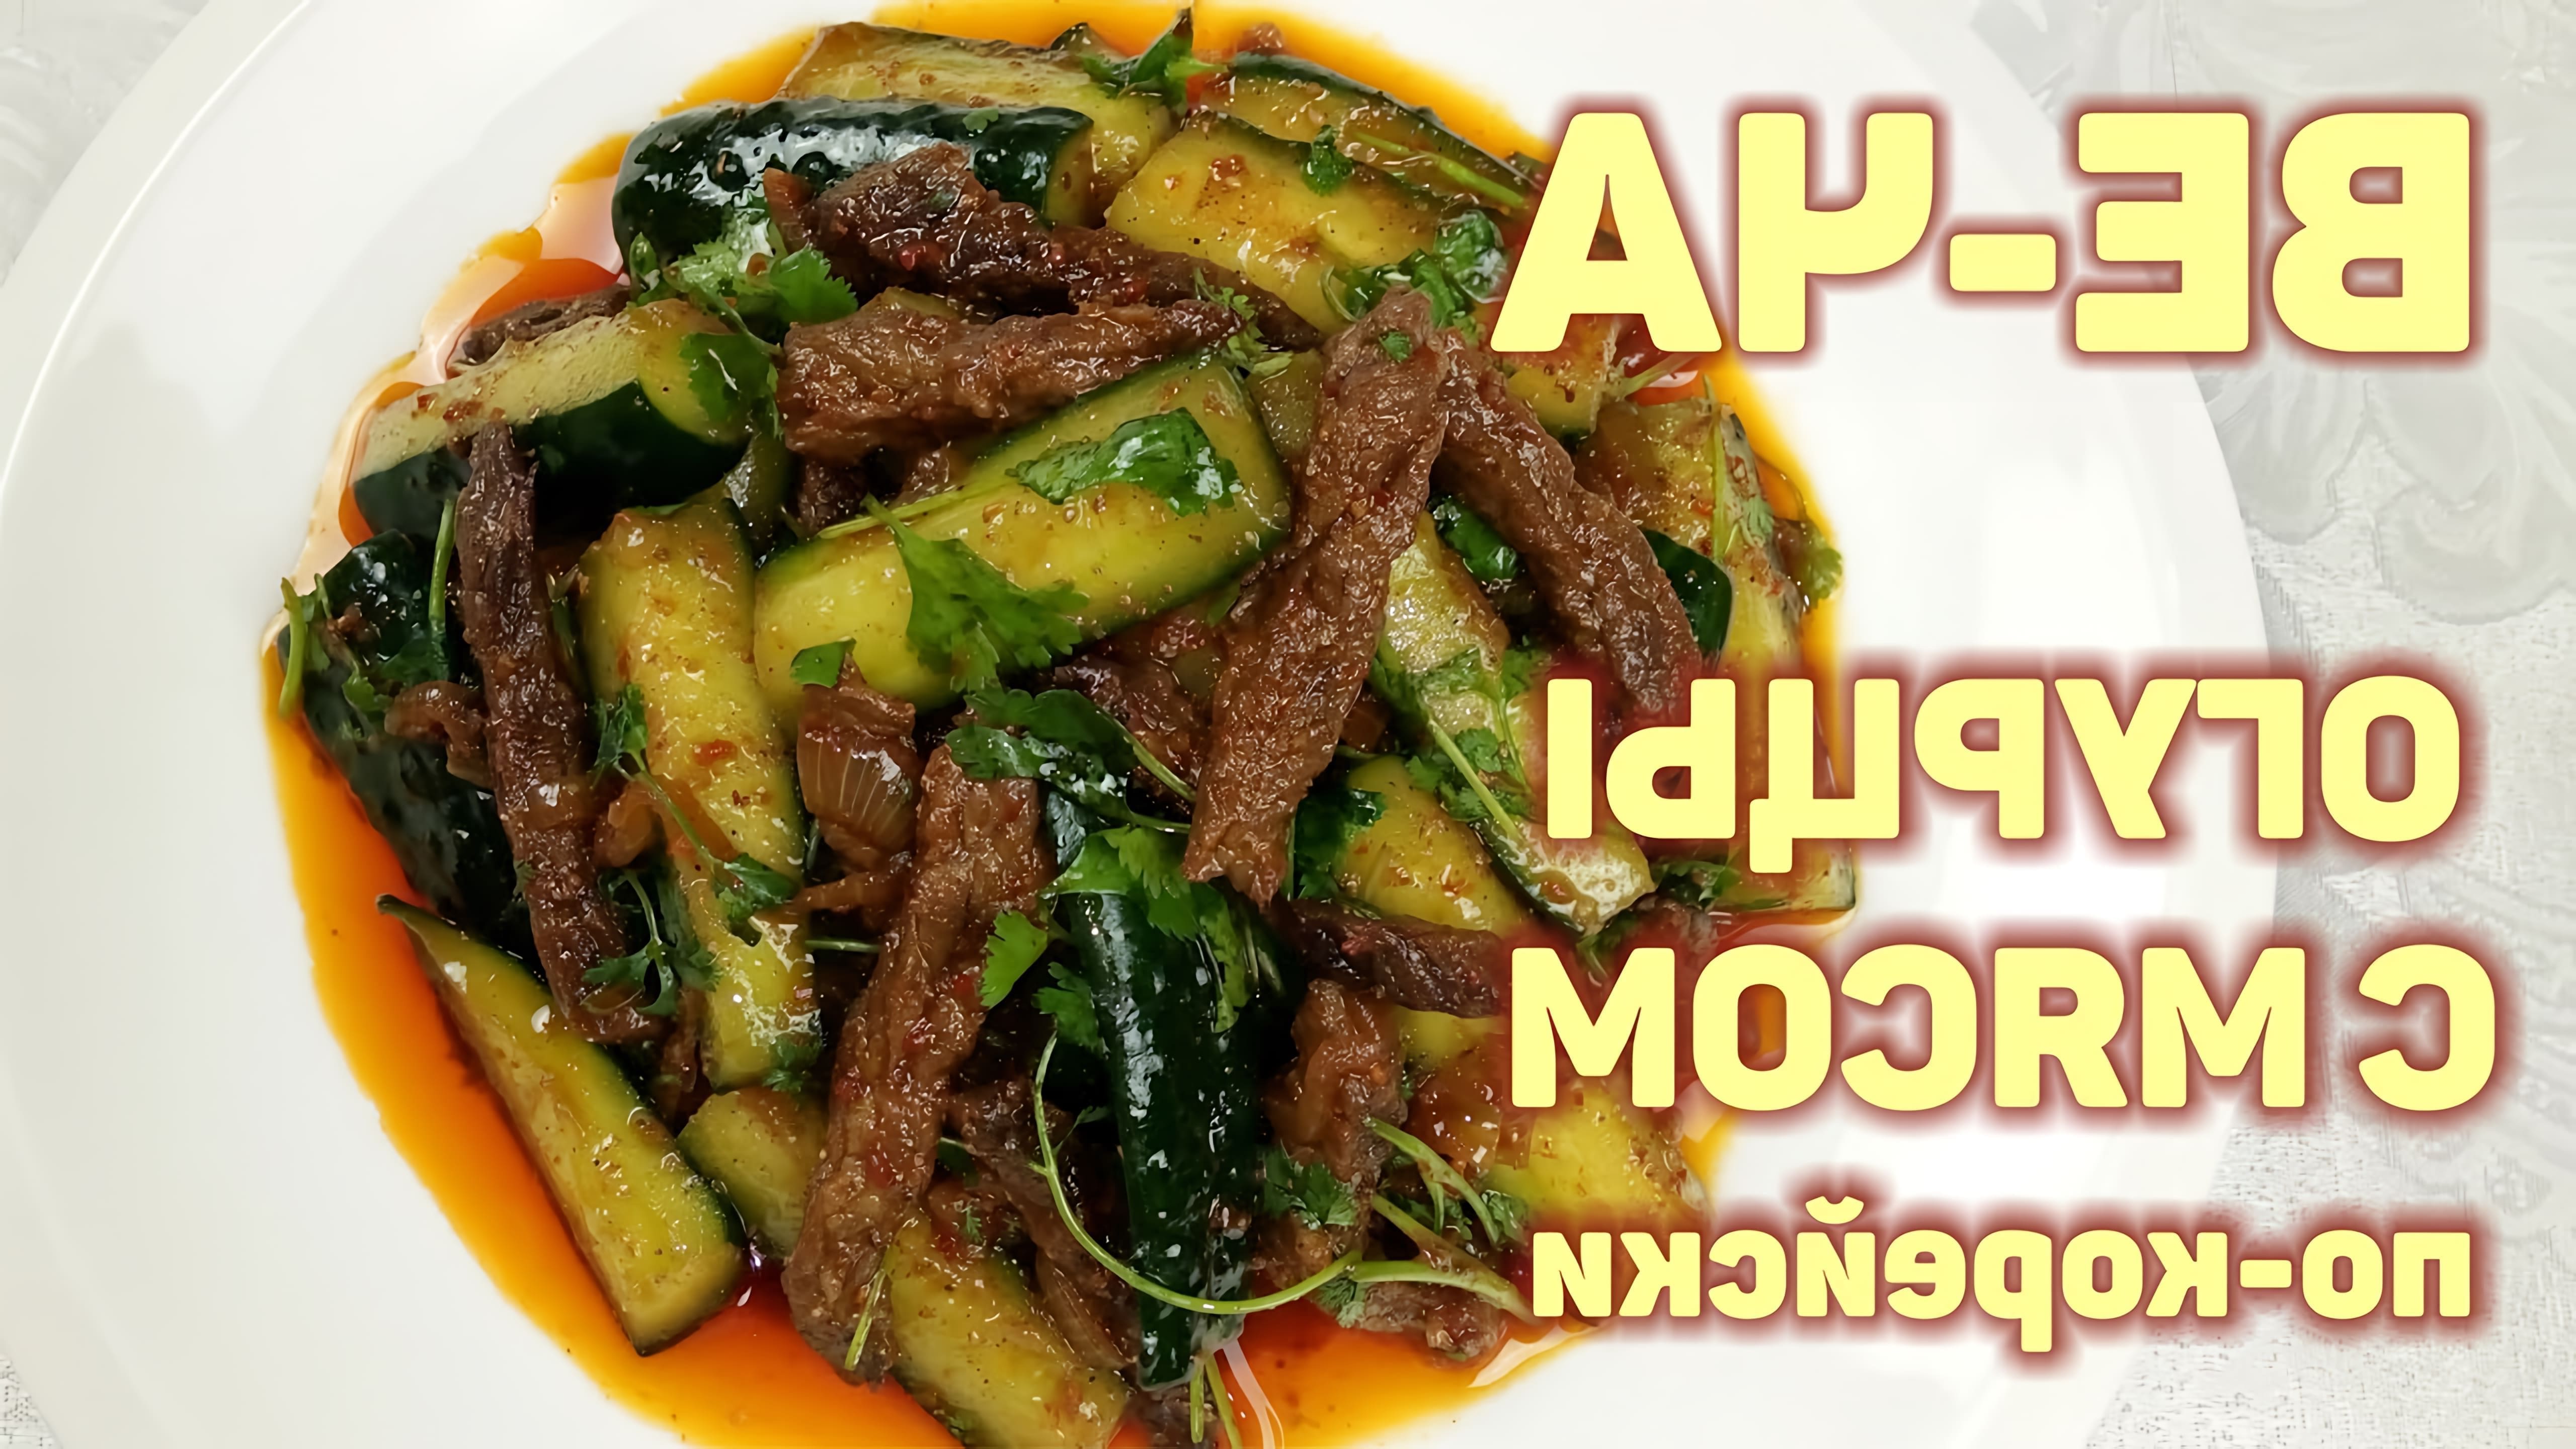 В этом видео демонстрируется процесс приготовления корейского салата "Ве-ча" из огурцов с мясом